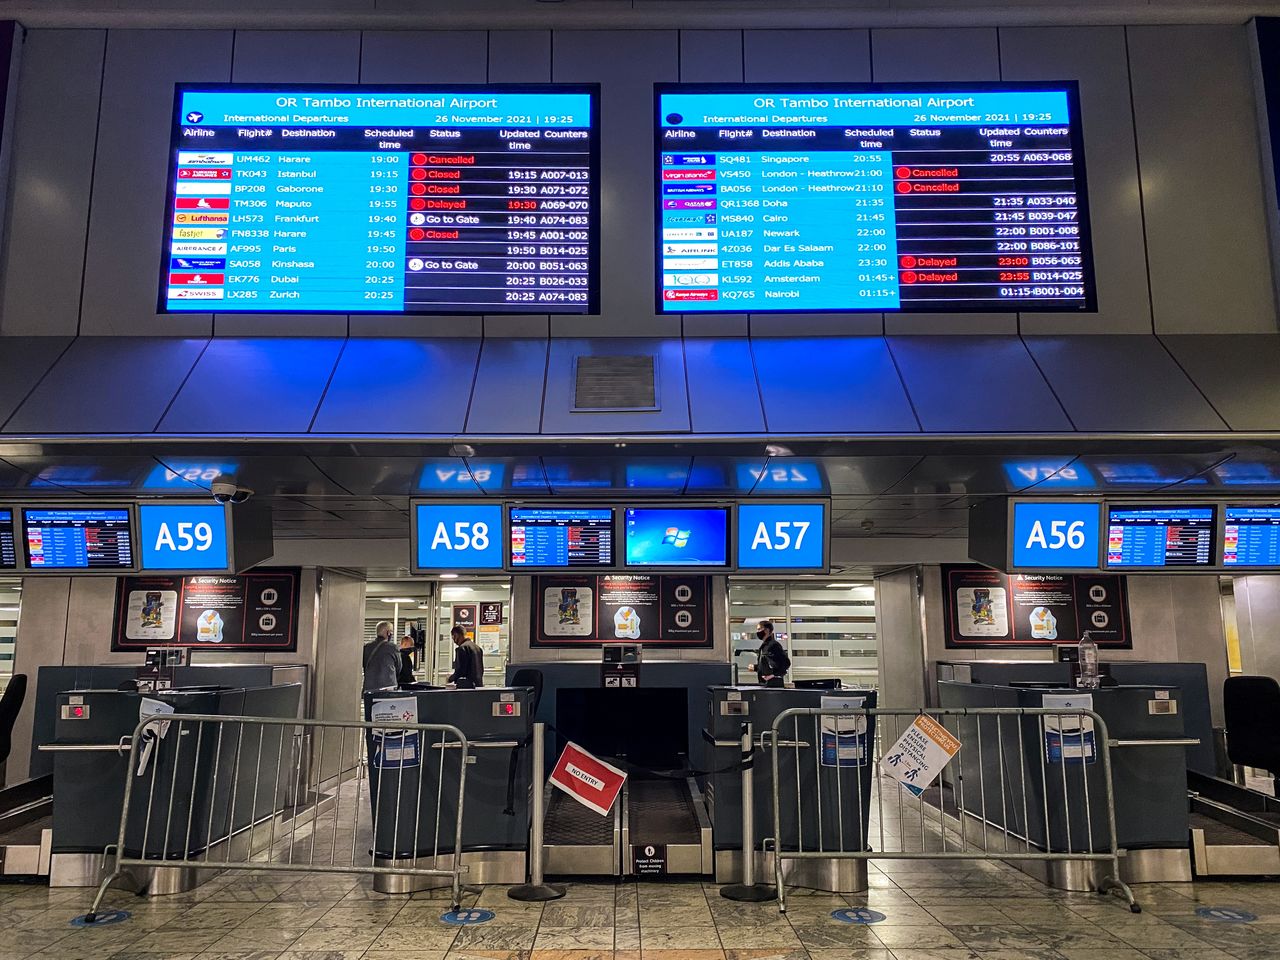 Carteles digitales muestran vuelos cancelados a Londres - Heathrow en el aeropuerto internacional O.R. Tambo en Johannesburgo, Sudáfrica. 26 de noviembre de 2021. REUTERS/ Sumaya Hisham